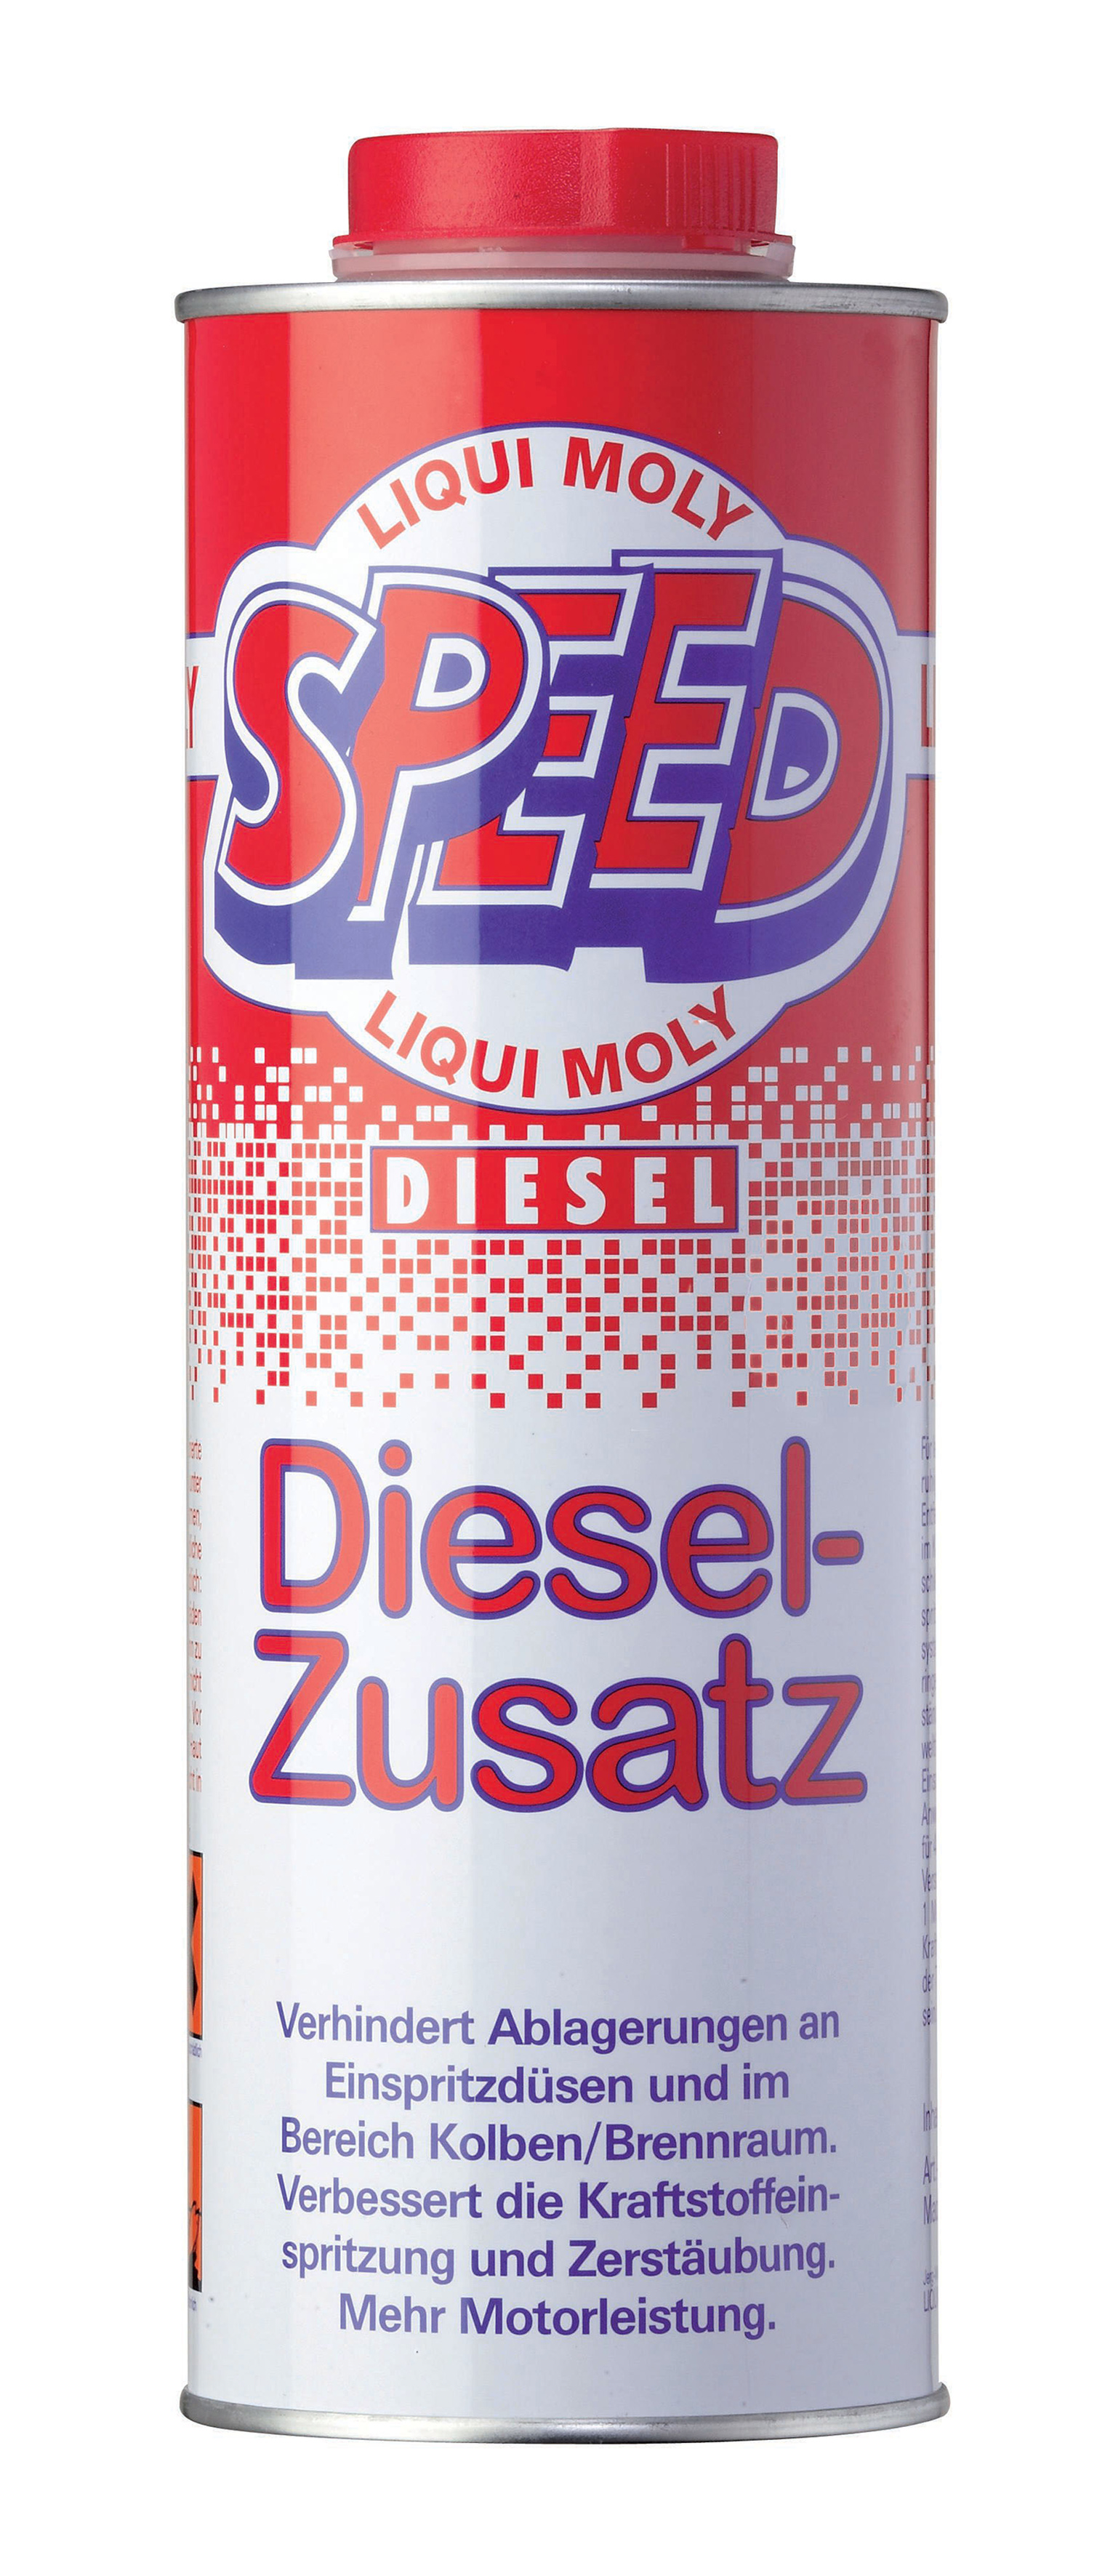 Liqui Moly Speed Diesel-Zusatz 5160 in 1 lt Dose